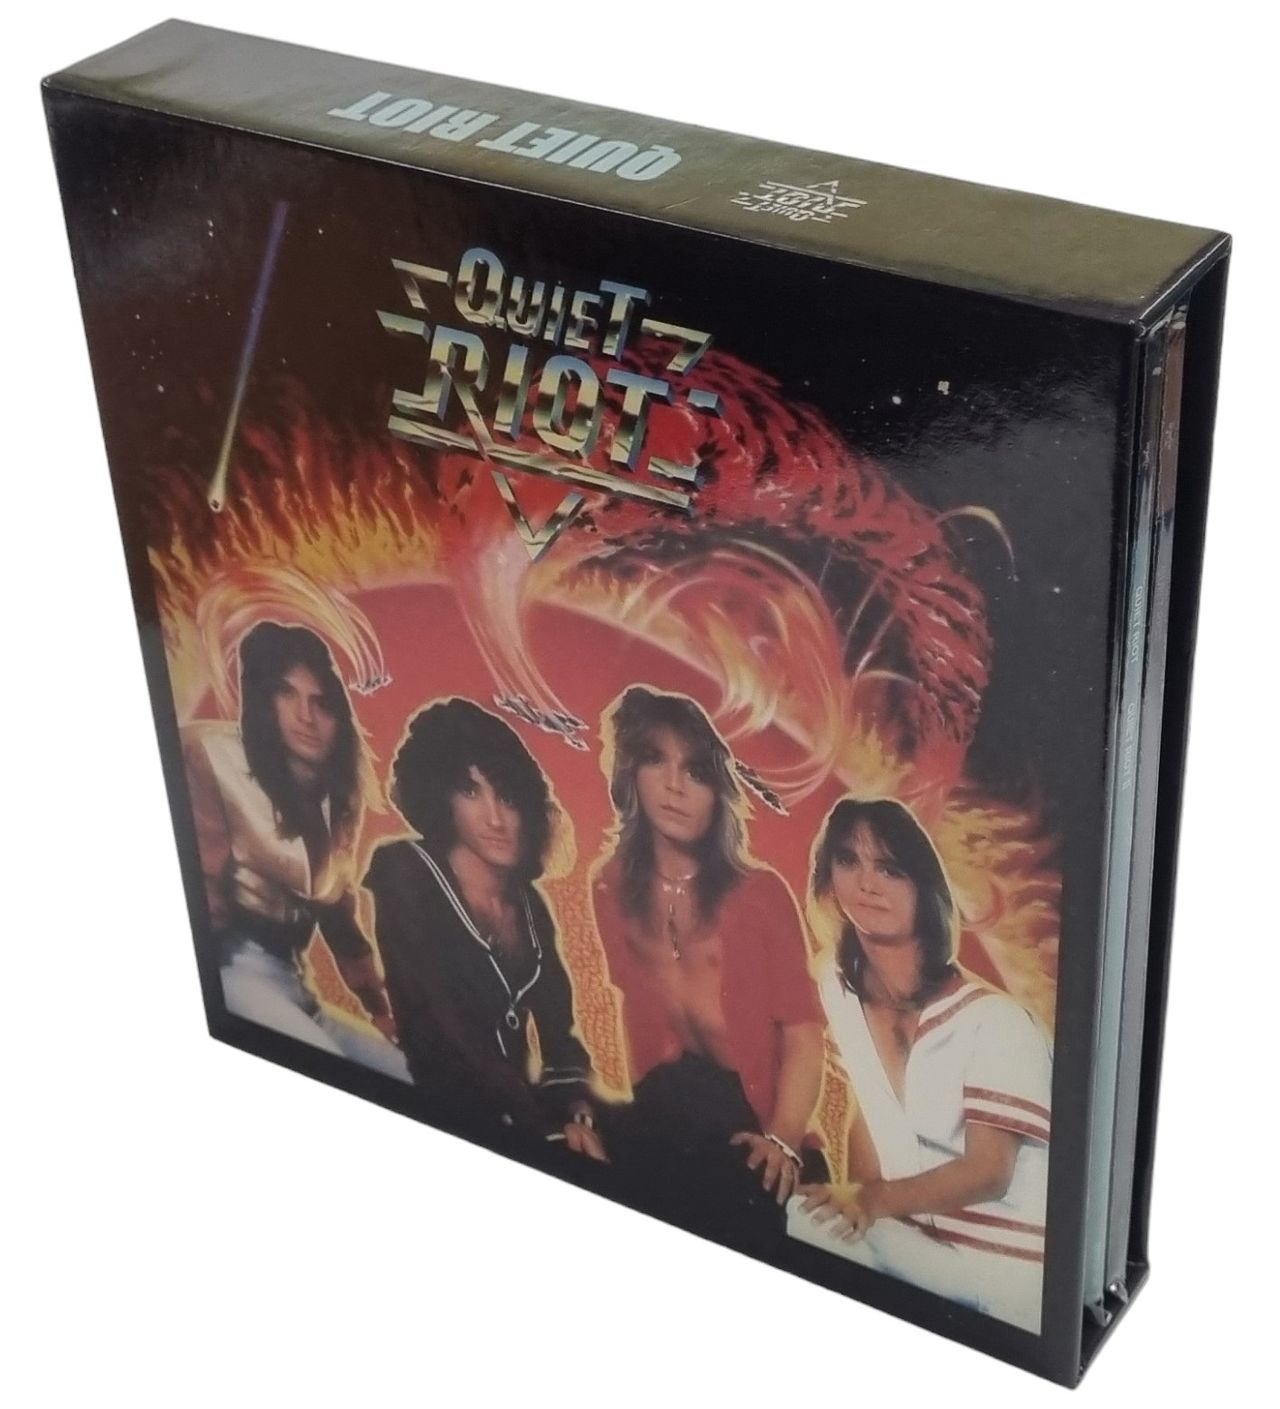 Quiet Riot Quiet Riot I & II - CD BOX Japanese Cd album box set